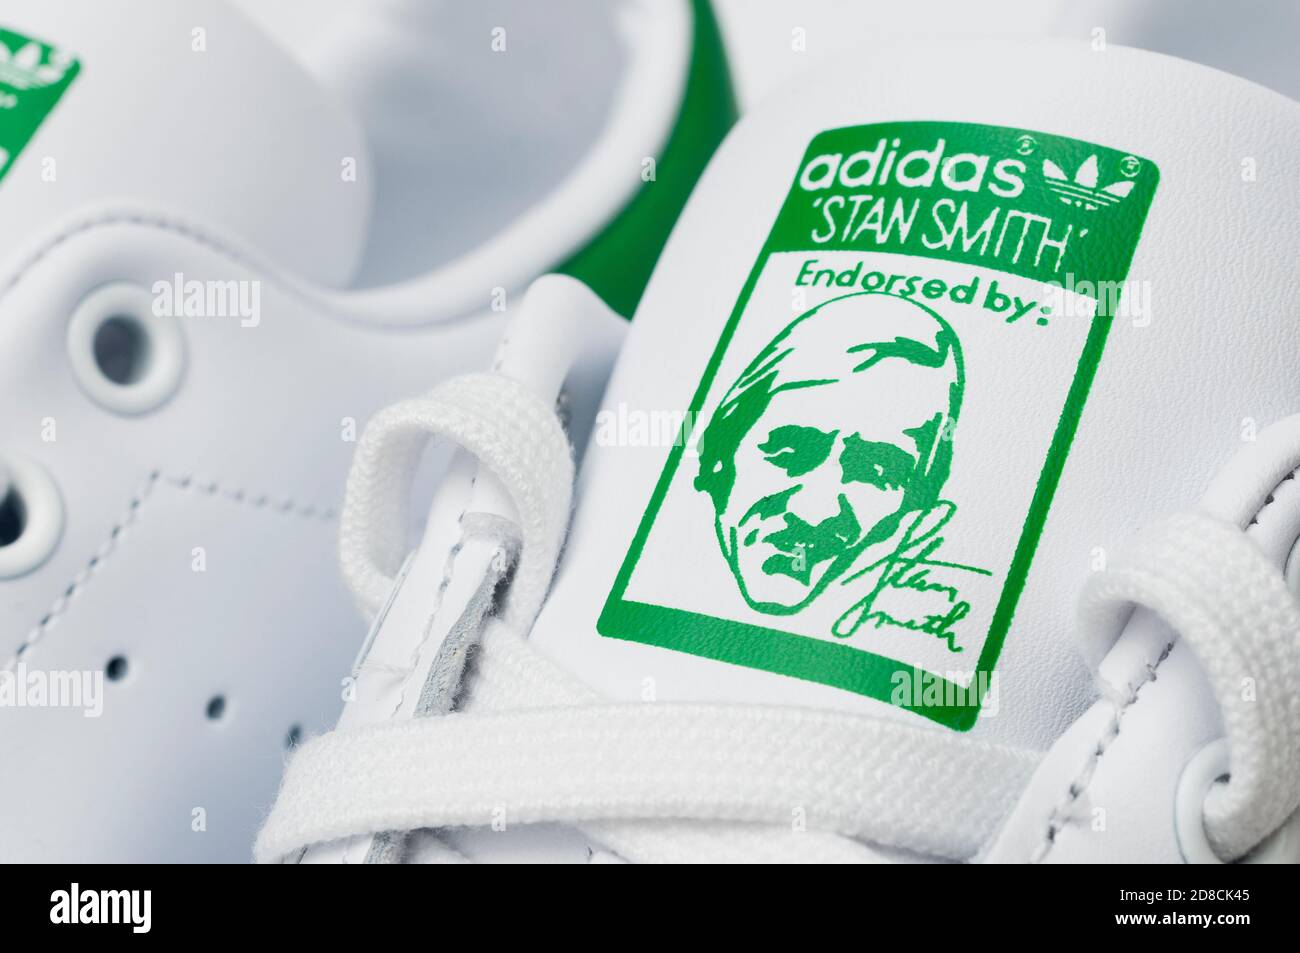 Adidas Stan Smith OG PK Men's Trainer White/Green